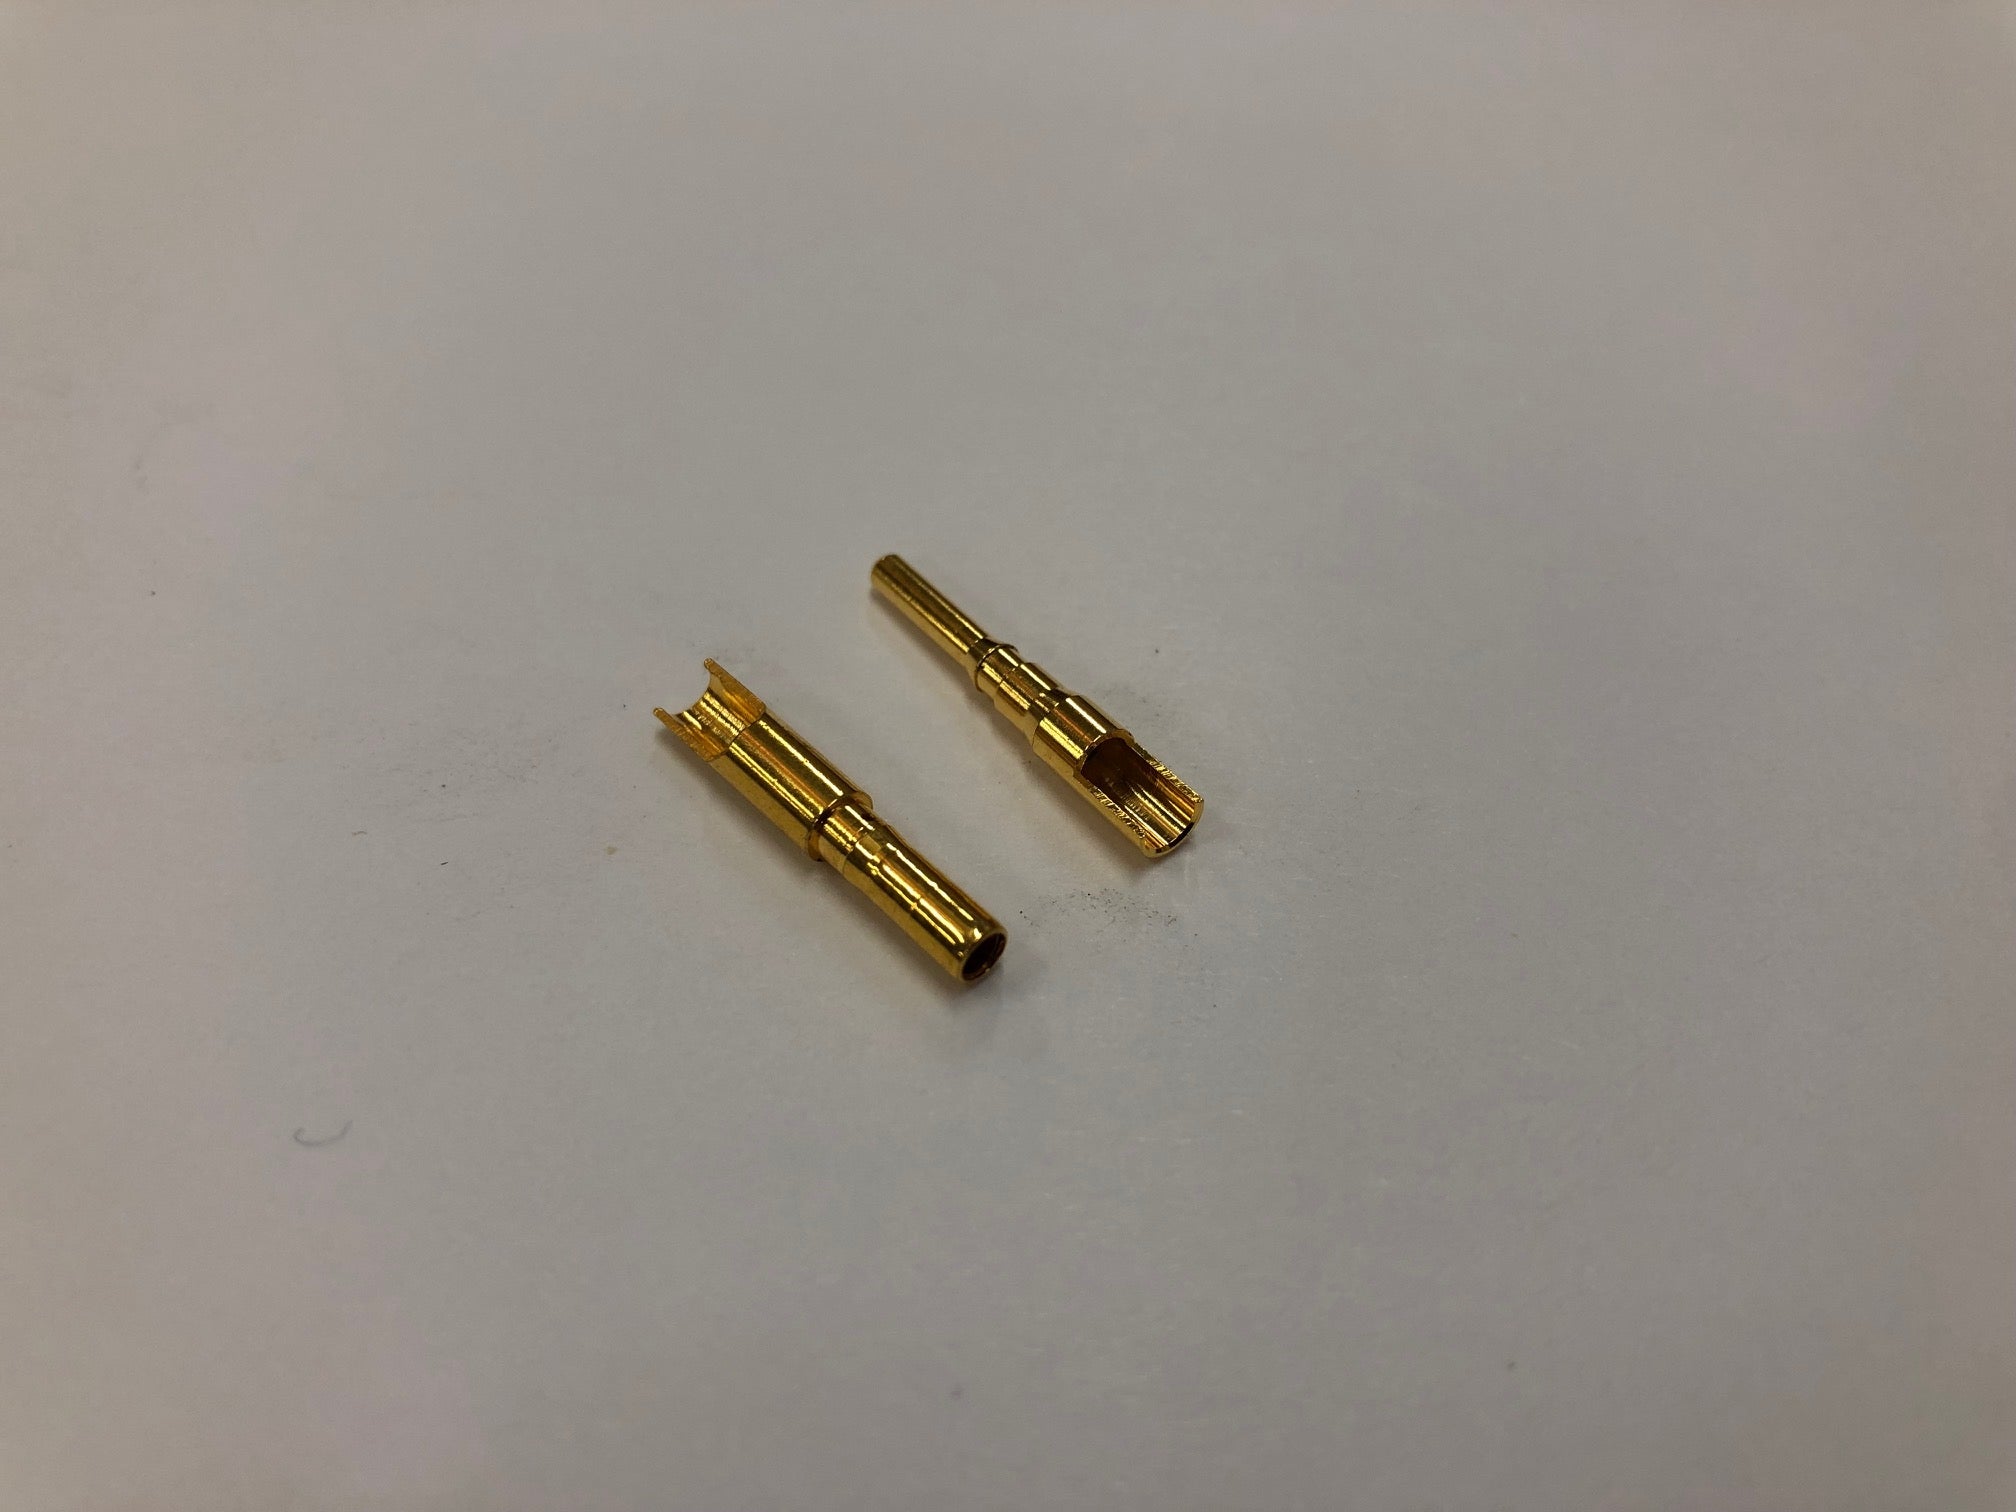 2mm Gold Bullet Connector Set (Easy Solder) - 1 Pair